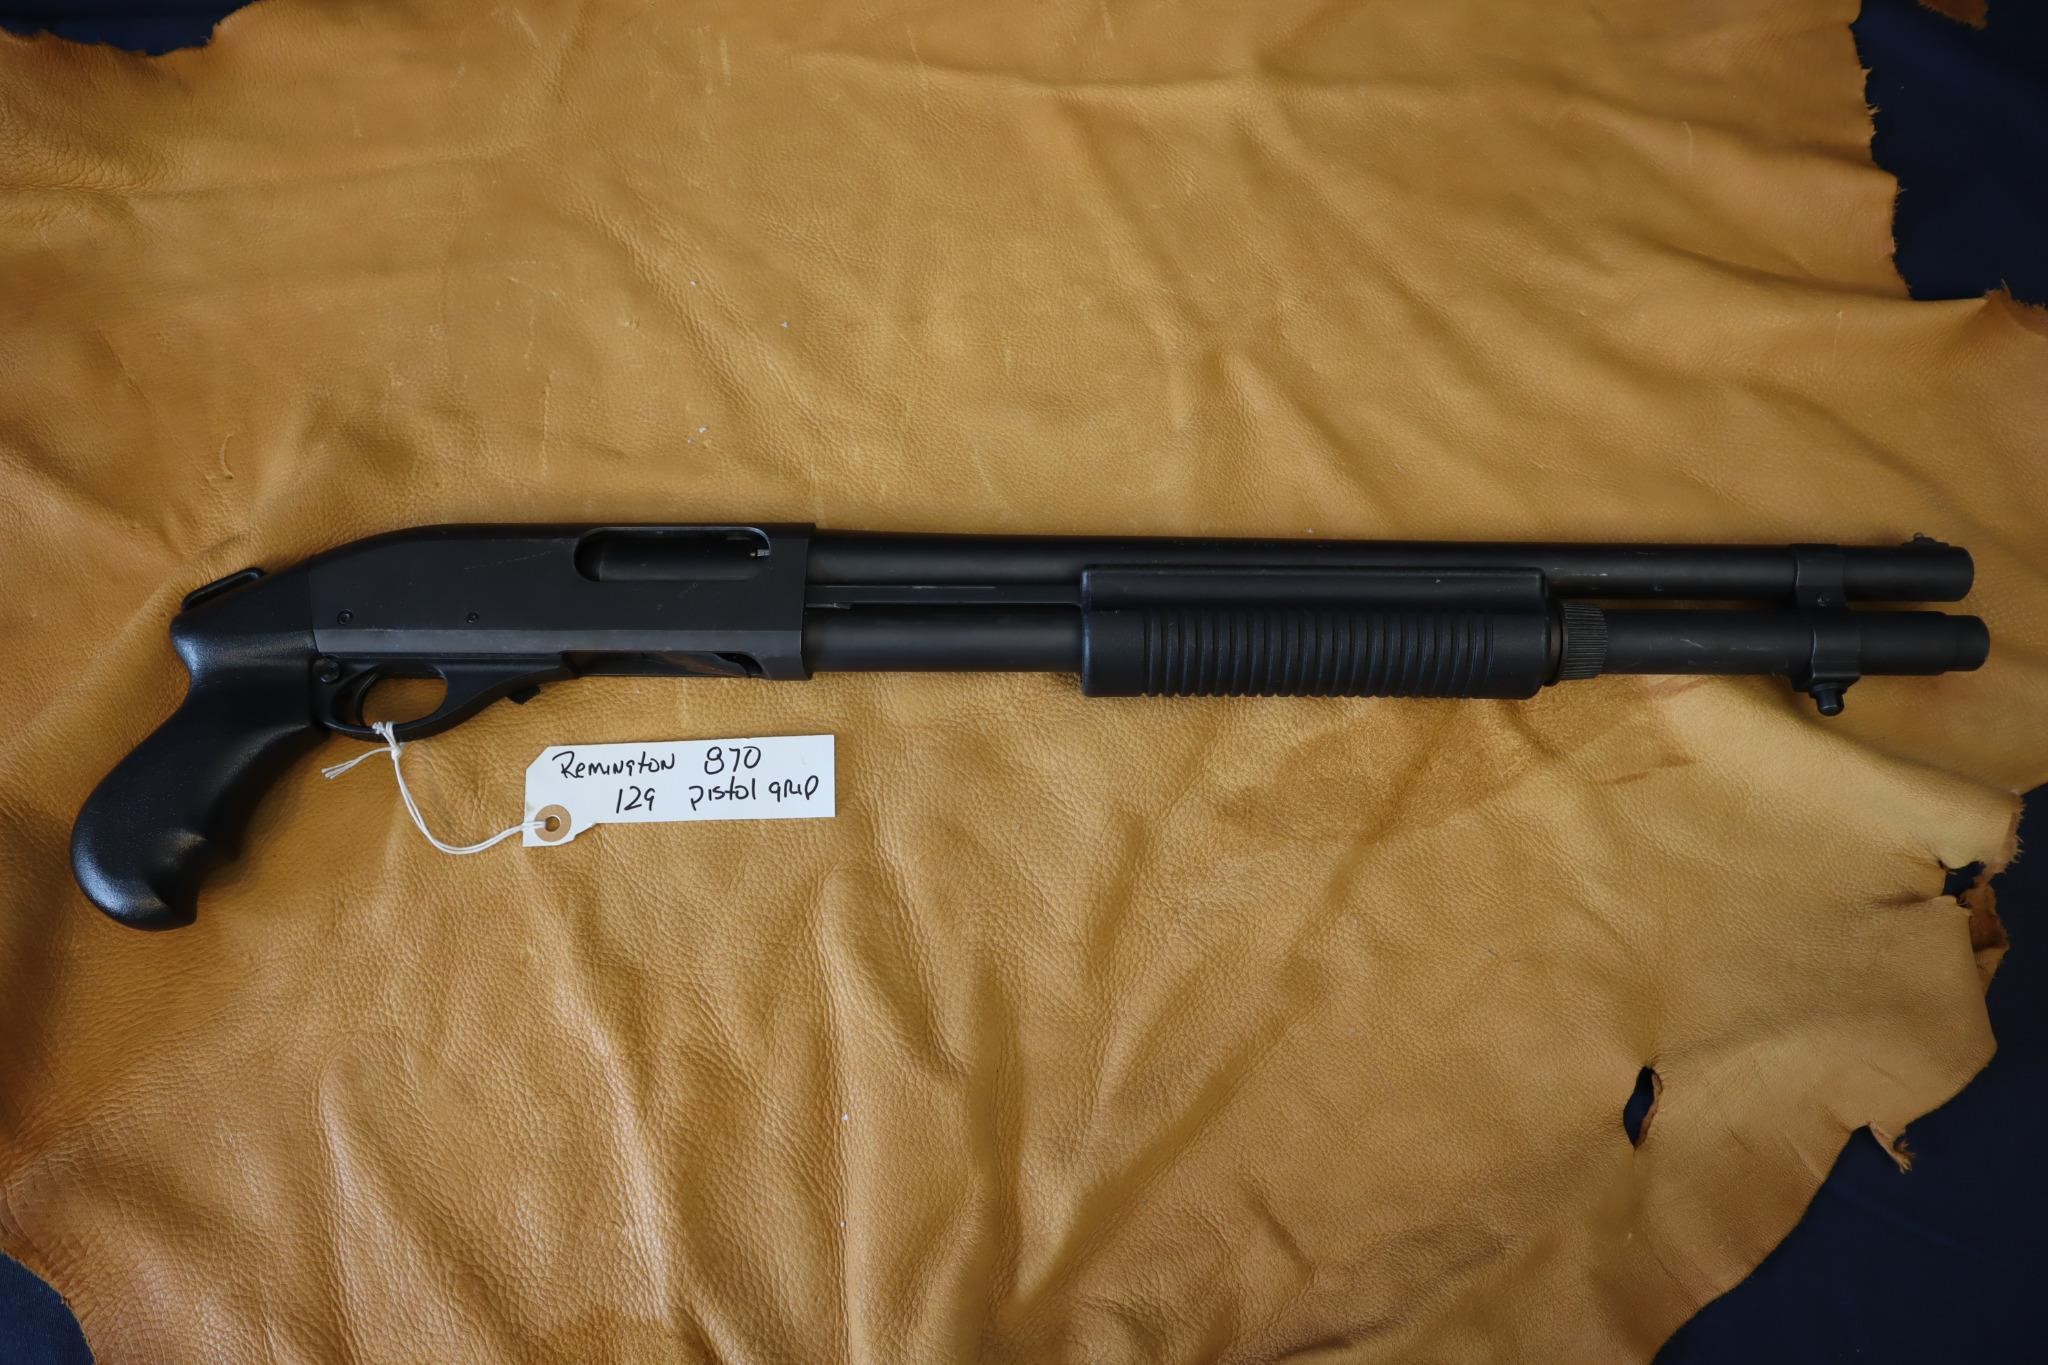 Remington 870 12 ga 2 3/4 or 3", pistol grip, 1998